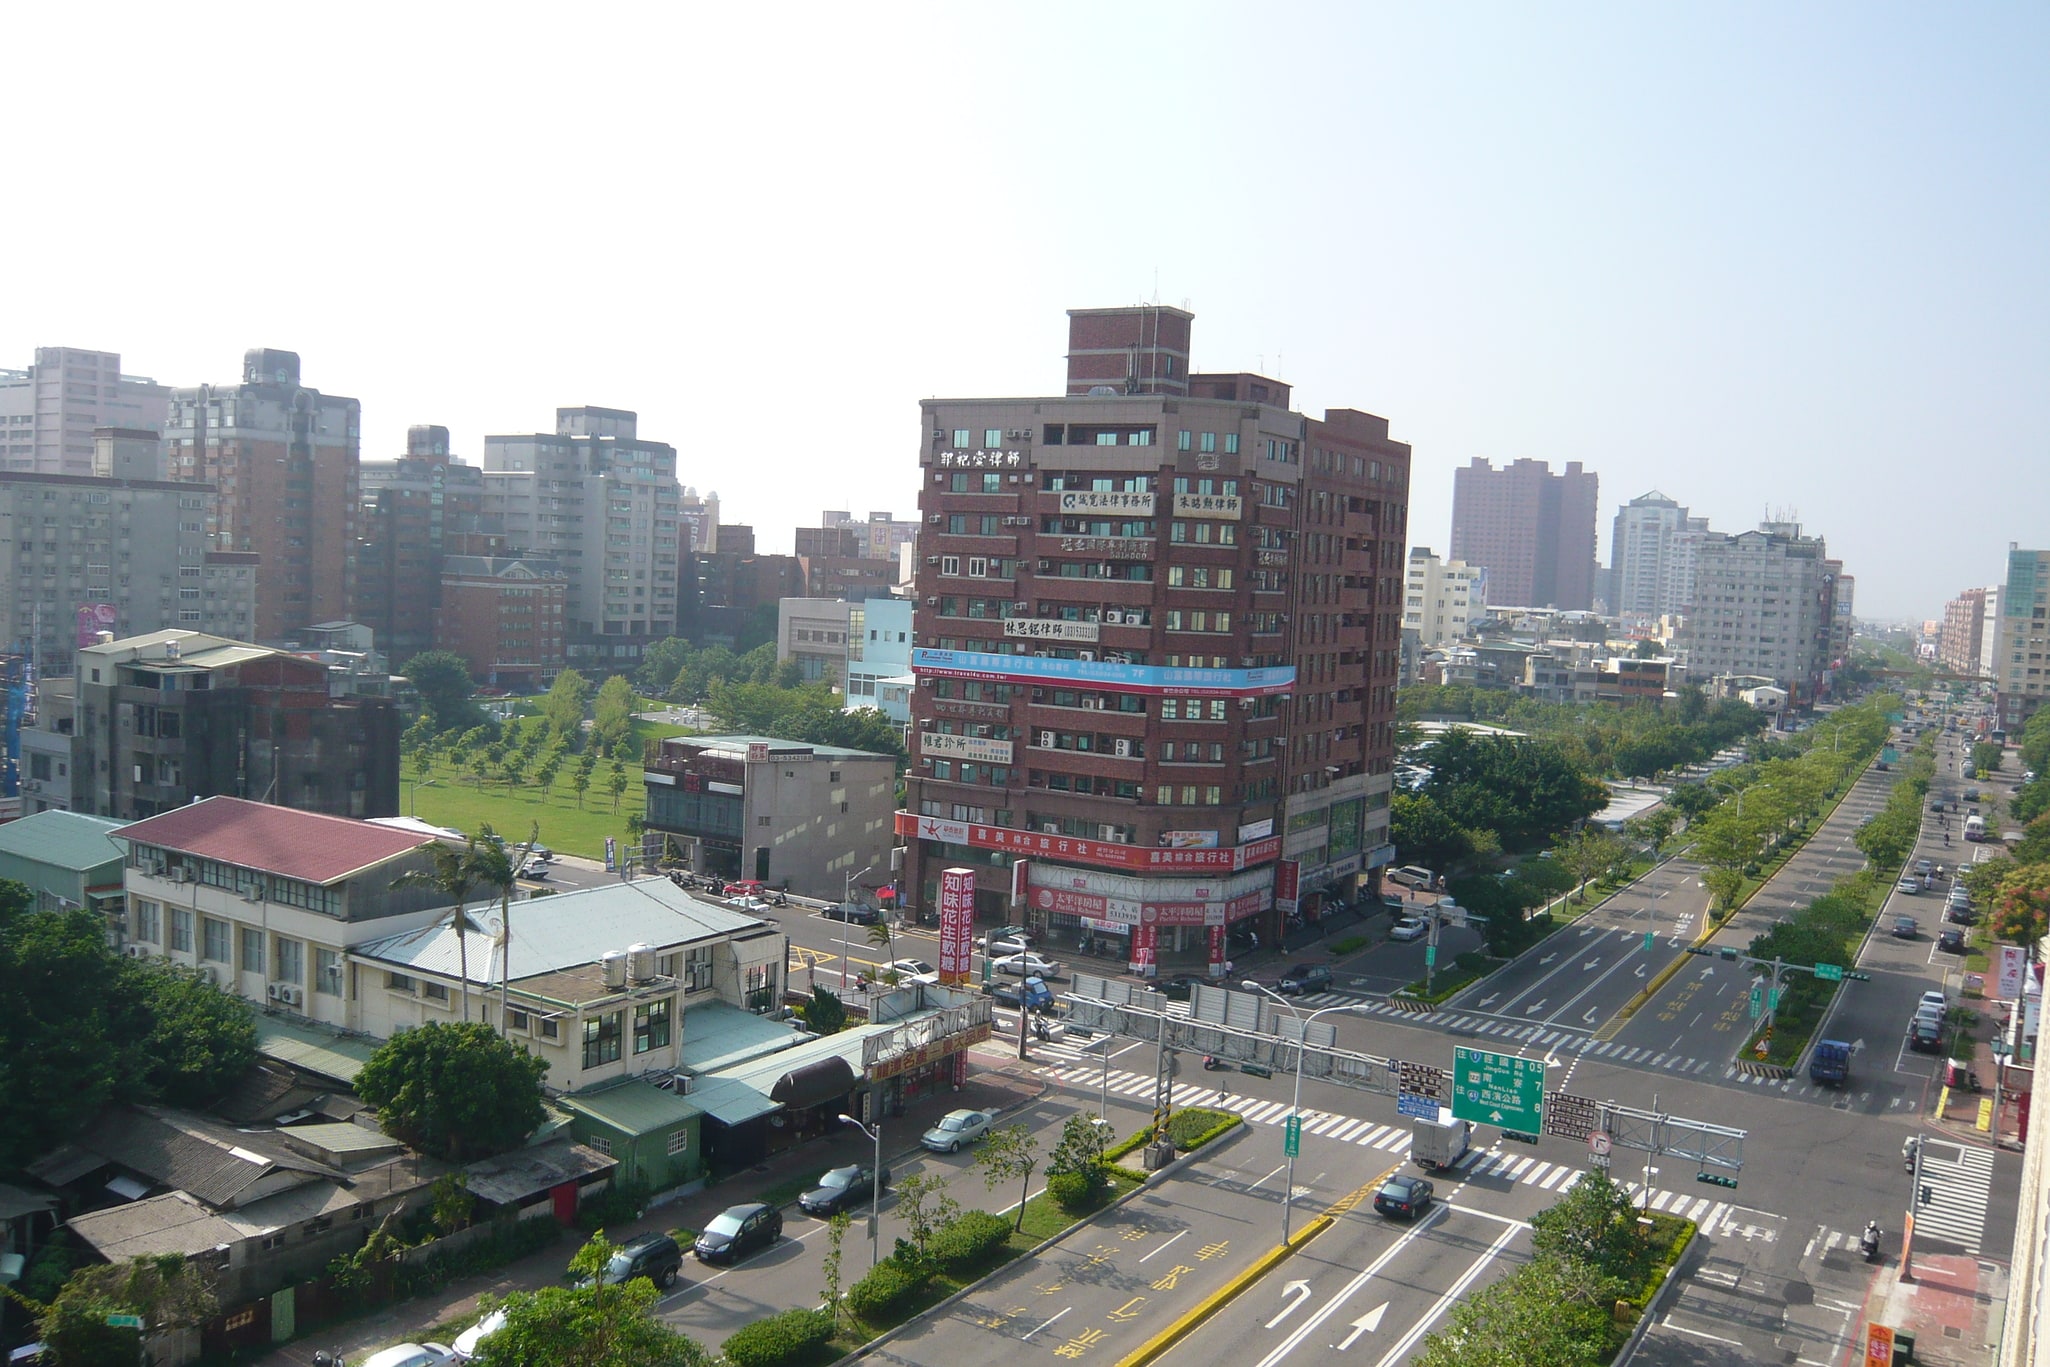 Hsinchu, Taiwan